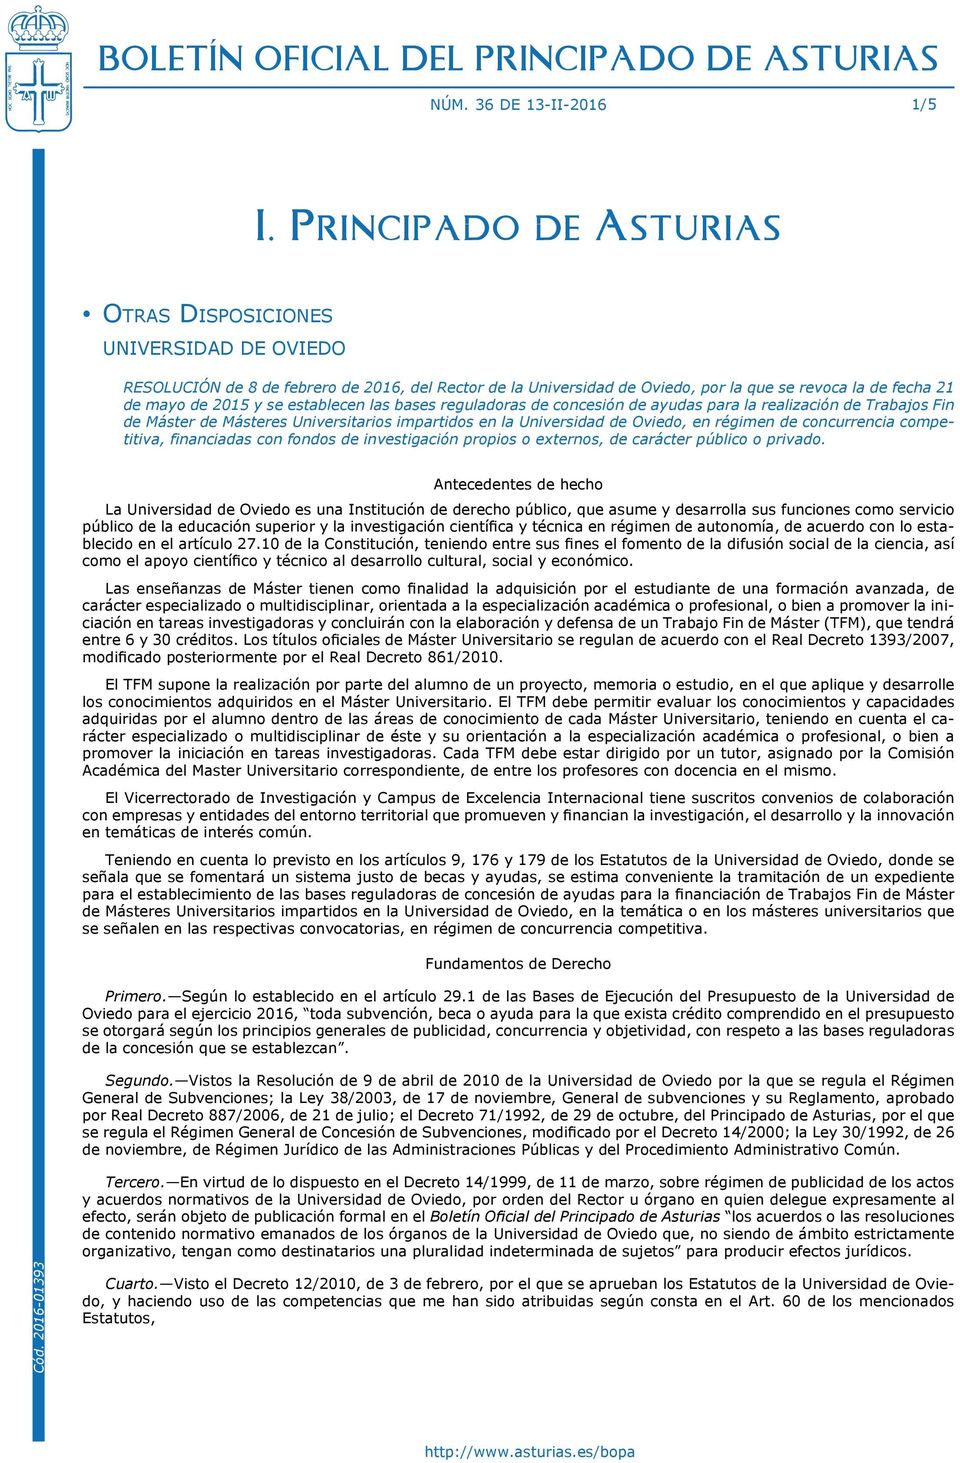 se establecen las bases reguladoras de concesión de ayudas para la realización de Trabajos Fin de Máster de Másteres Universitarios impartidos en la Universidad de Oviedo, en régimen de concurrencia